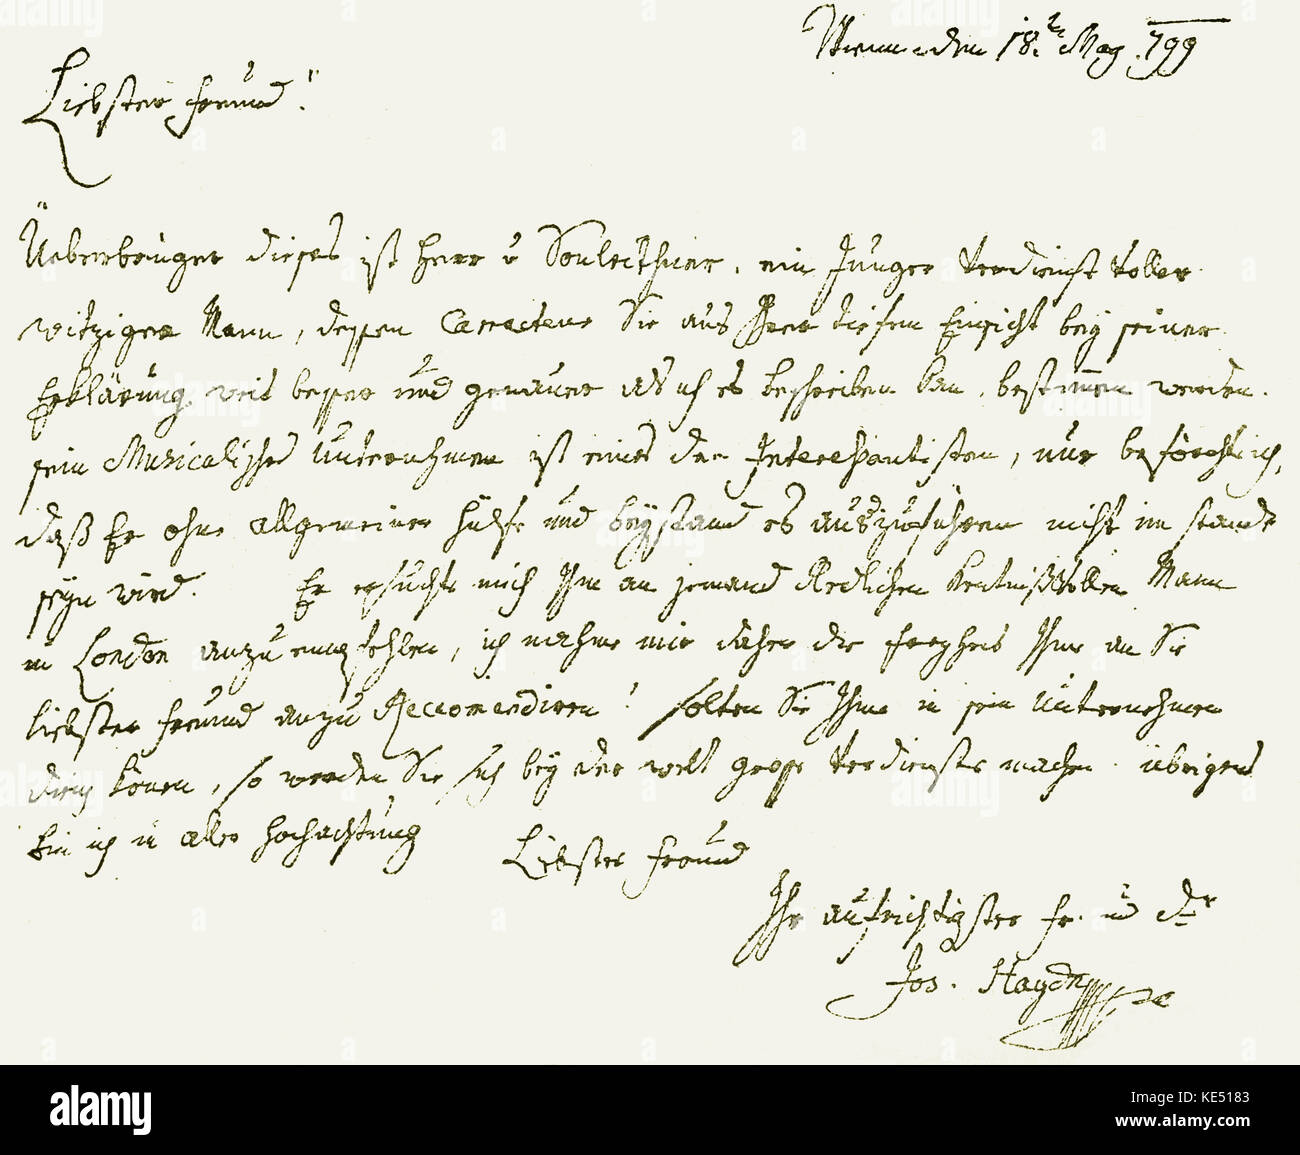 Franz Joseph Haydn - Carta del compositor austríaco Johann Peter Salomon de  Londres. Con fecha 18 de mayo de 1799, Viena. Traducción: 'Dearest amigo,  el portador de esta, es un hombre joven